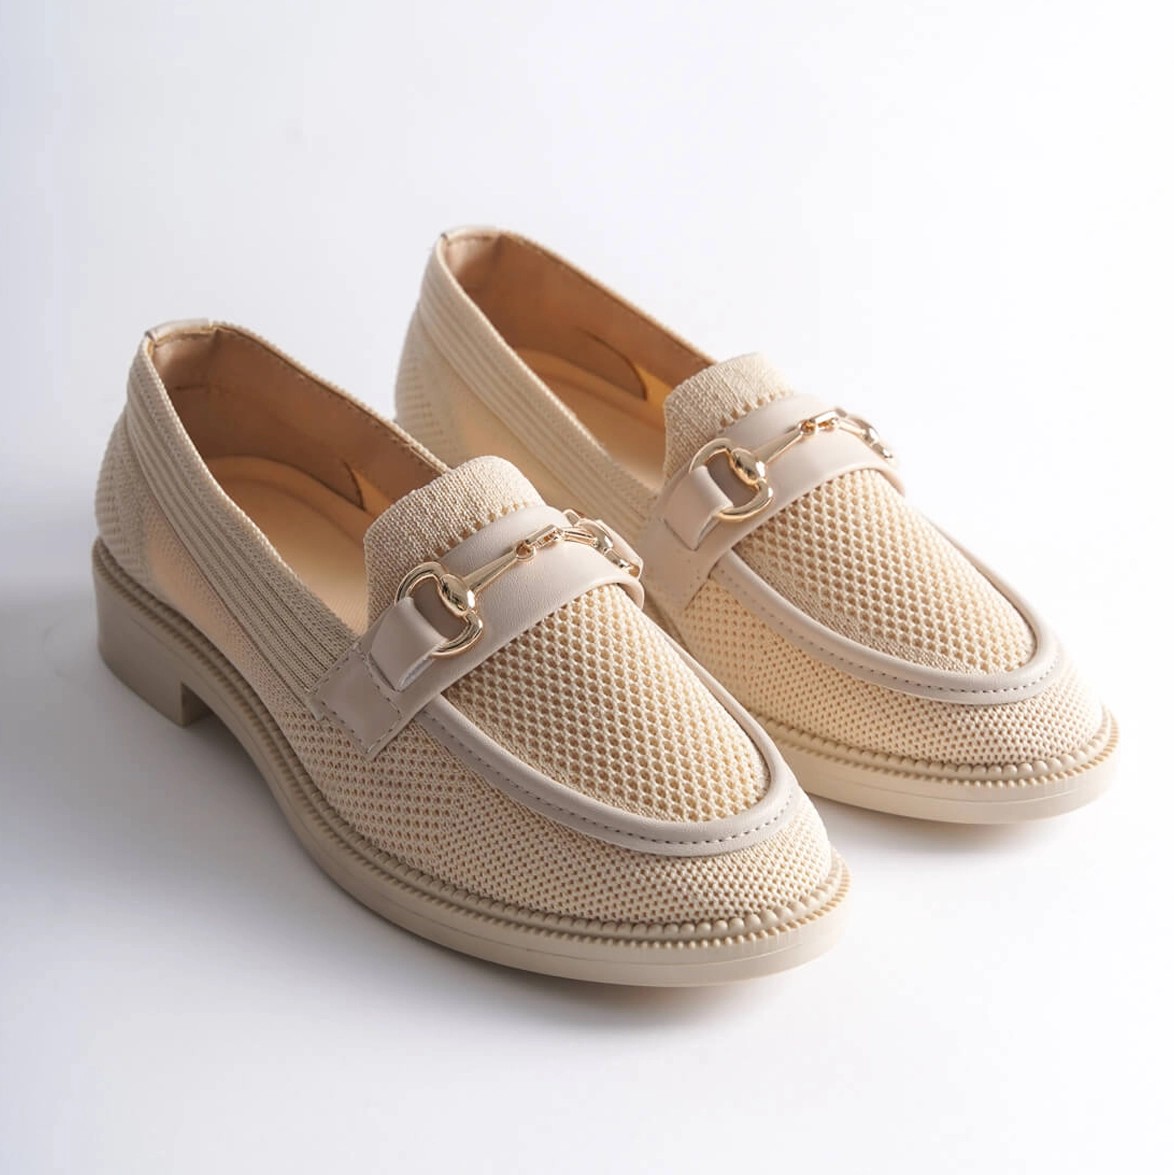 Tekstil Tokalı Loafer Günlük Ayakkabı - Bej